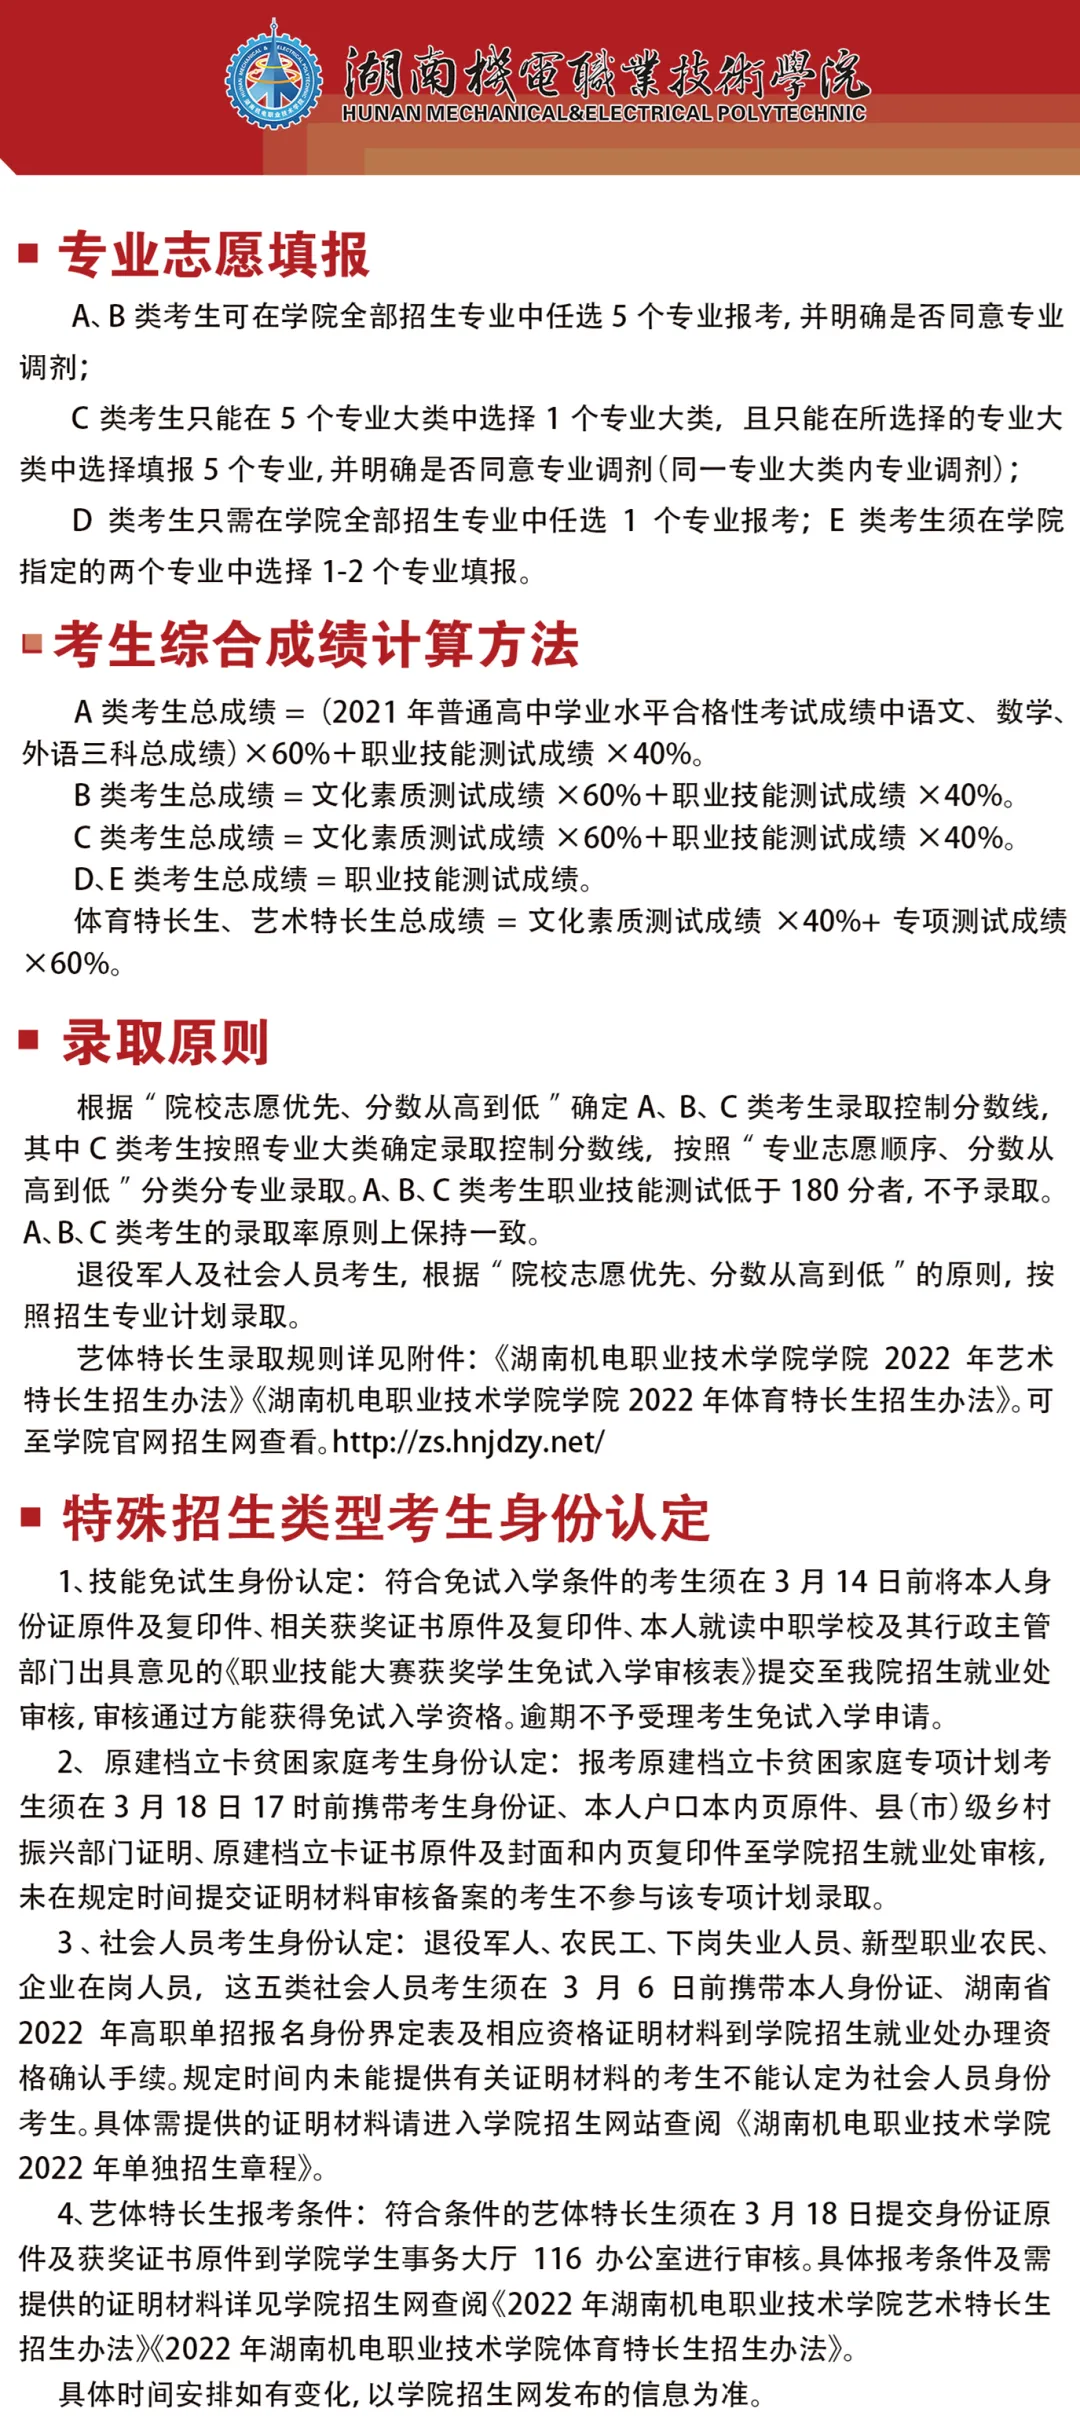 湖南机电职业技术学院2022年单招简章